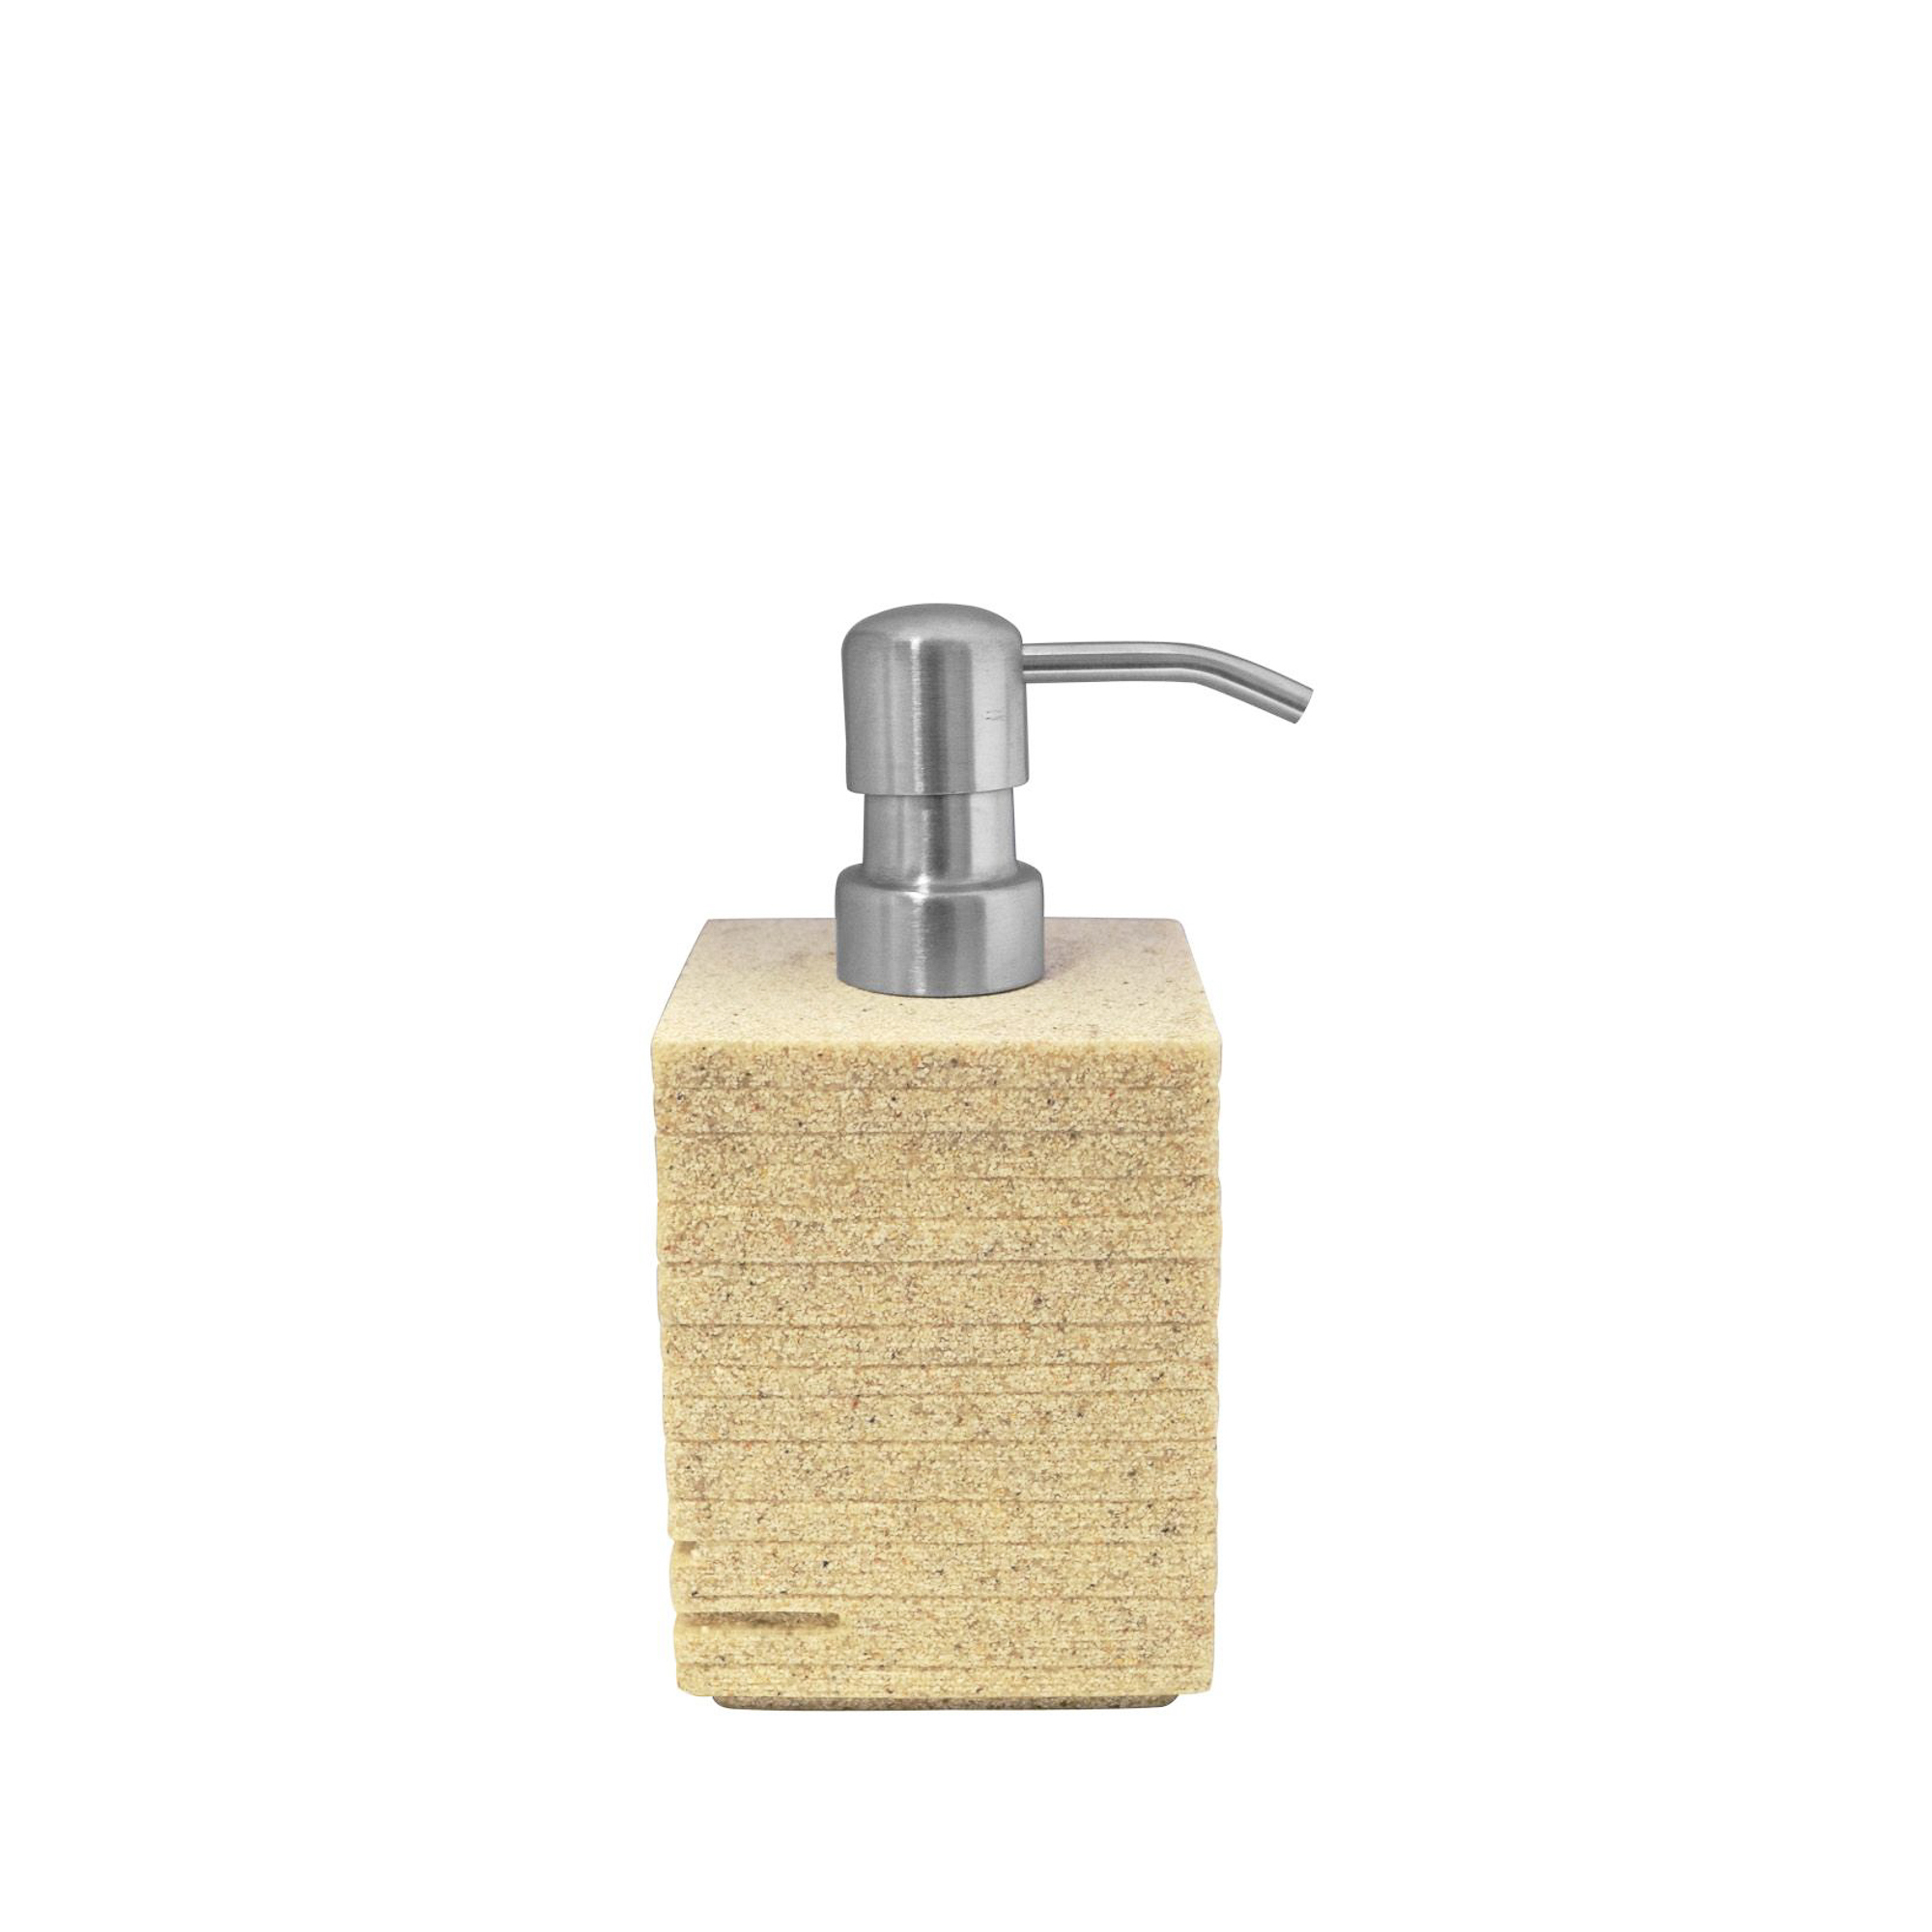 Дозатор для жидкого мыла Brick бежевый Ridder дозатор для жидкого мыла ridder brick 22150501 белый